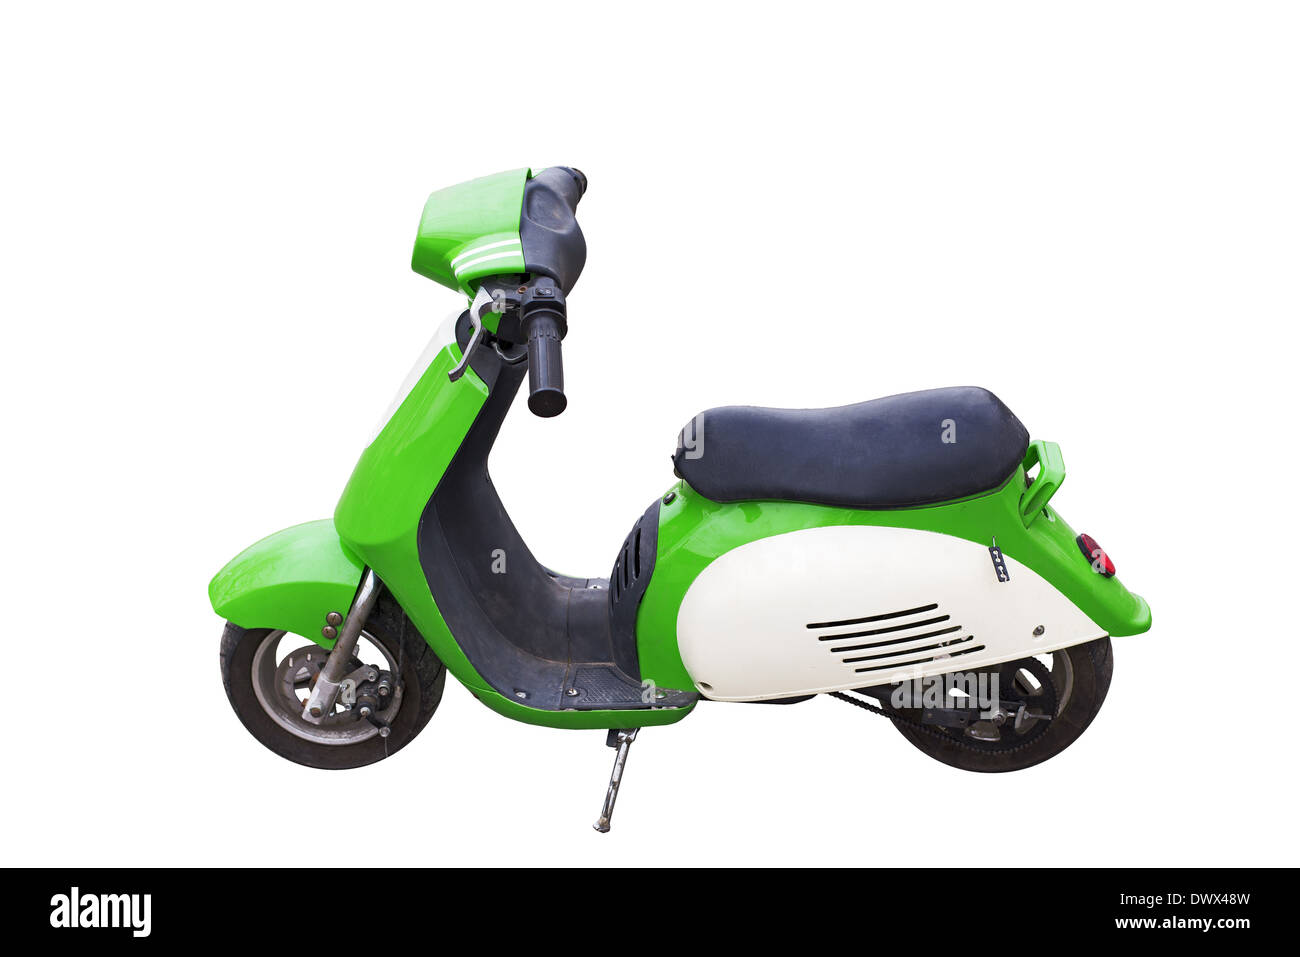 Mini moto motor cycle motorcycle fotografías e imágenes de alta resolución  - Alamy